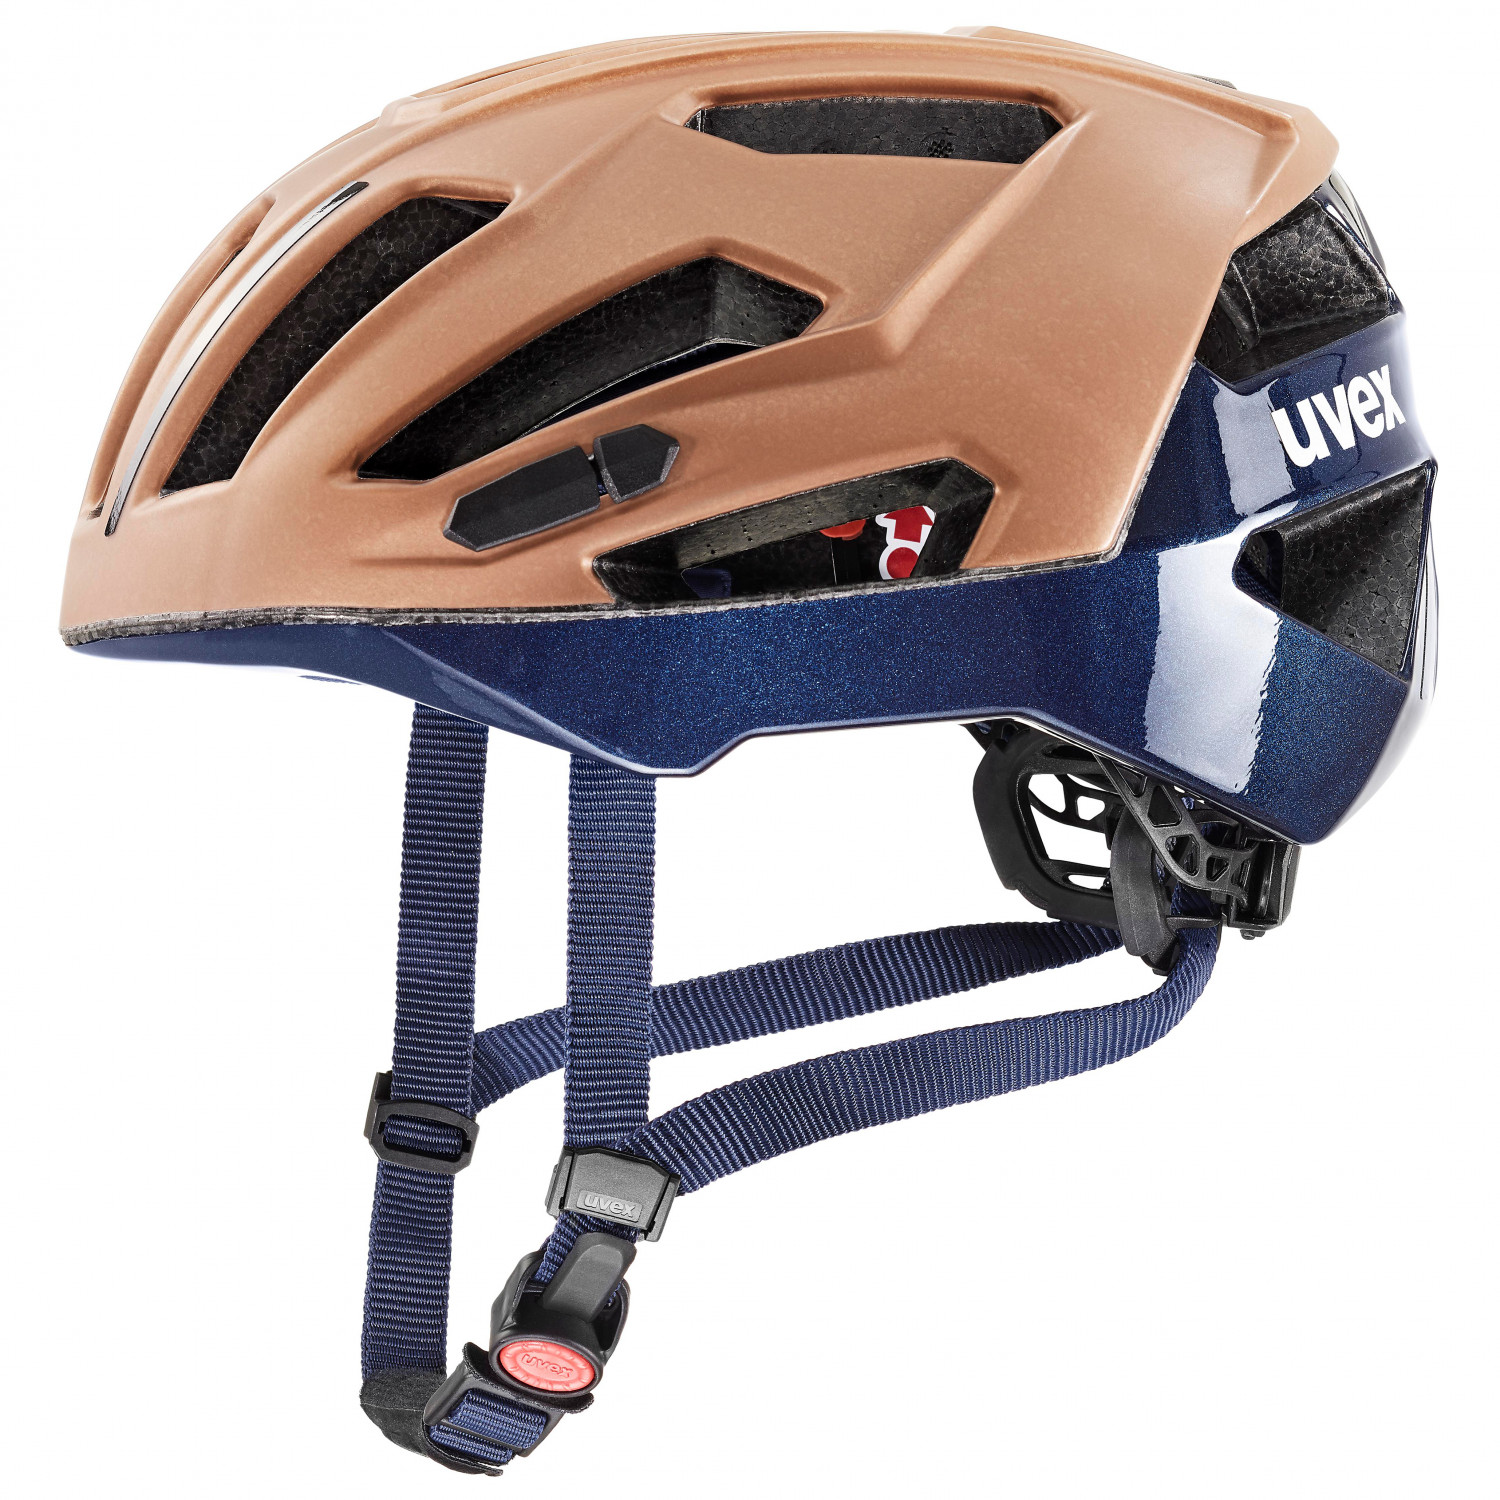 Велосипедный шлем Uvex Gravel X, цвет Hazel/Deep Space Matt шлем велосипедный детский регулируемый с вентиляционными отверстиями tt 018 rockbros